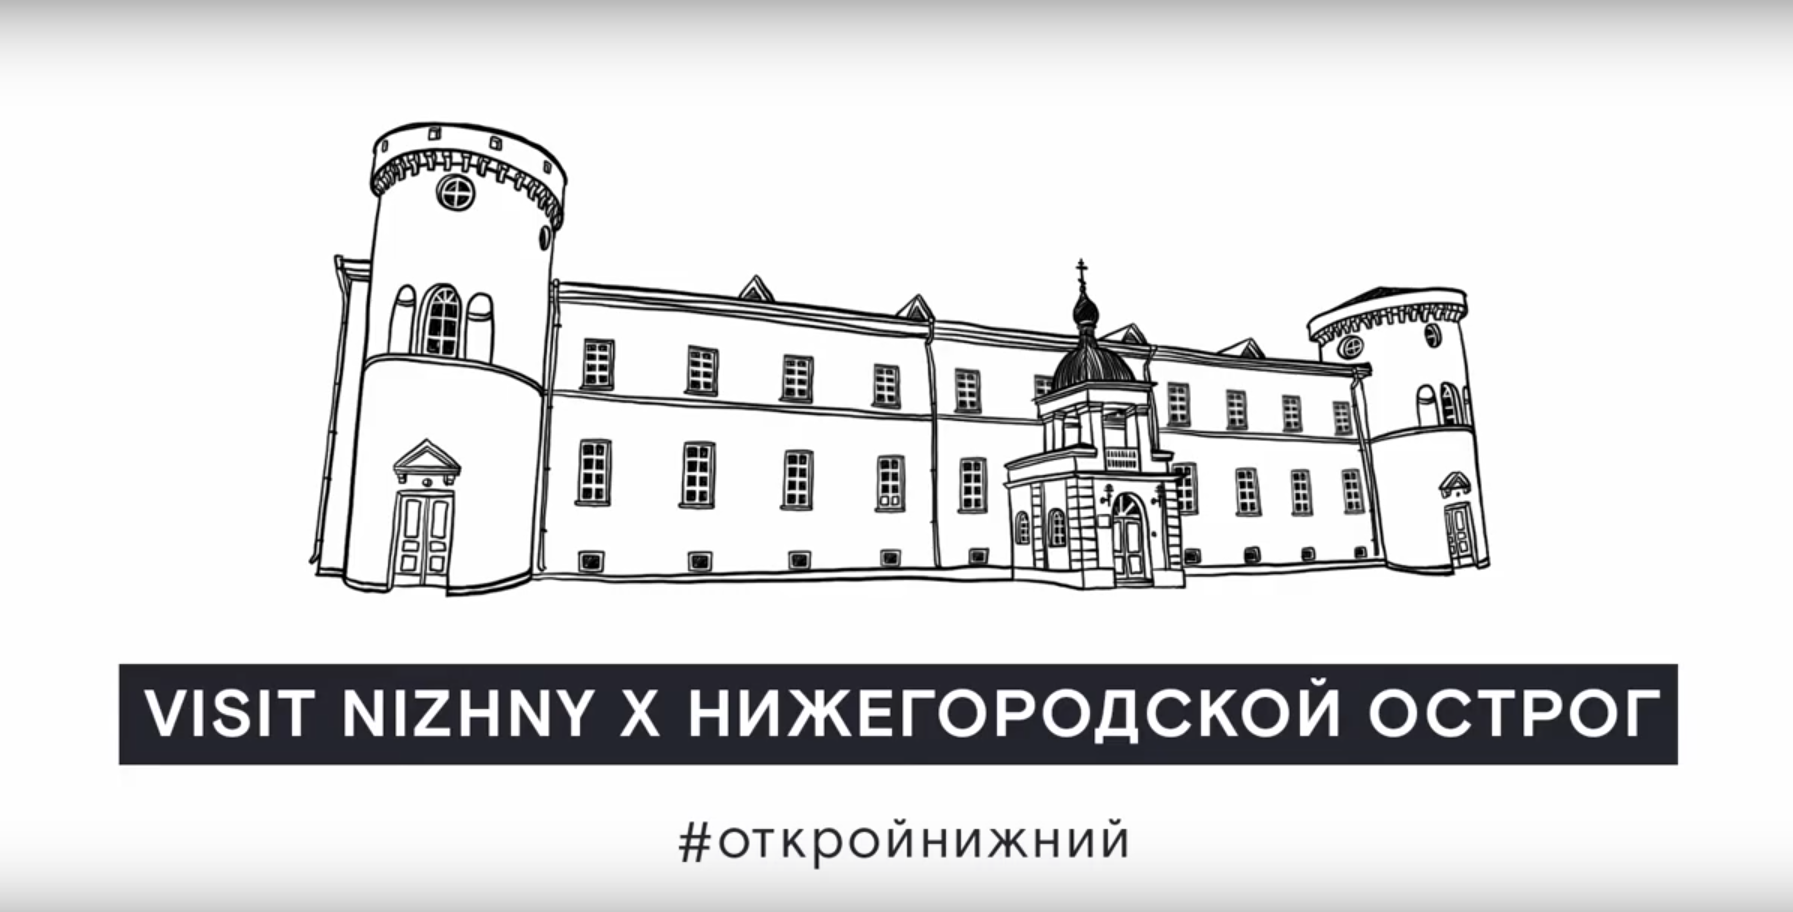 Посетить Нижегородский острог теперь можно в виртуальном режиме